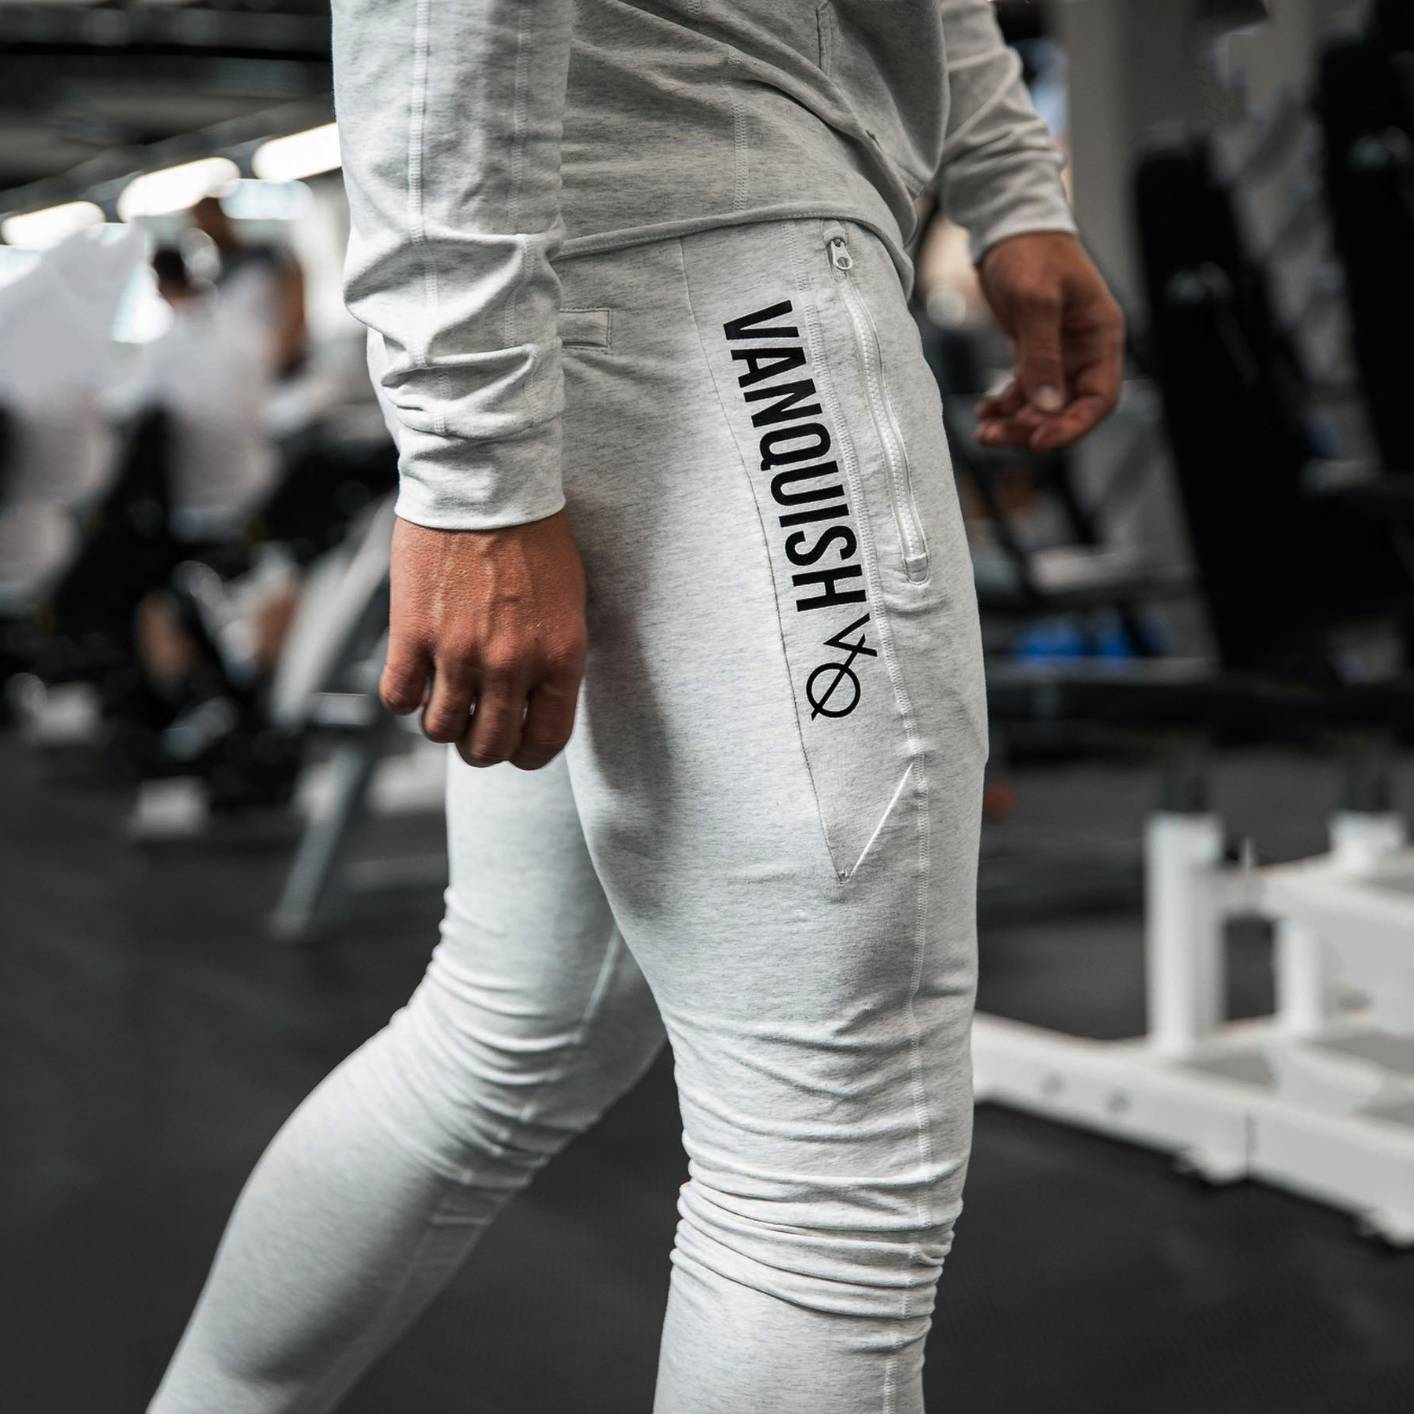 CK24-VQ Men's Sweatpants Slim Fit Joggers Workout Athletic Gym Pants with Zipper Pockets